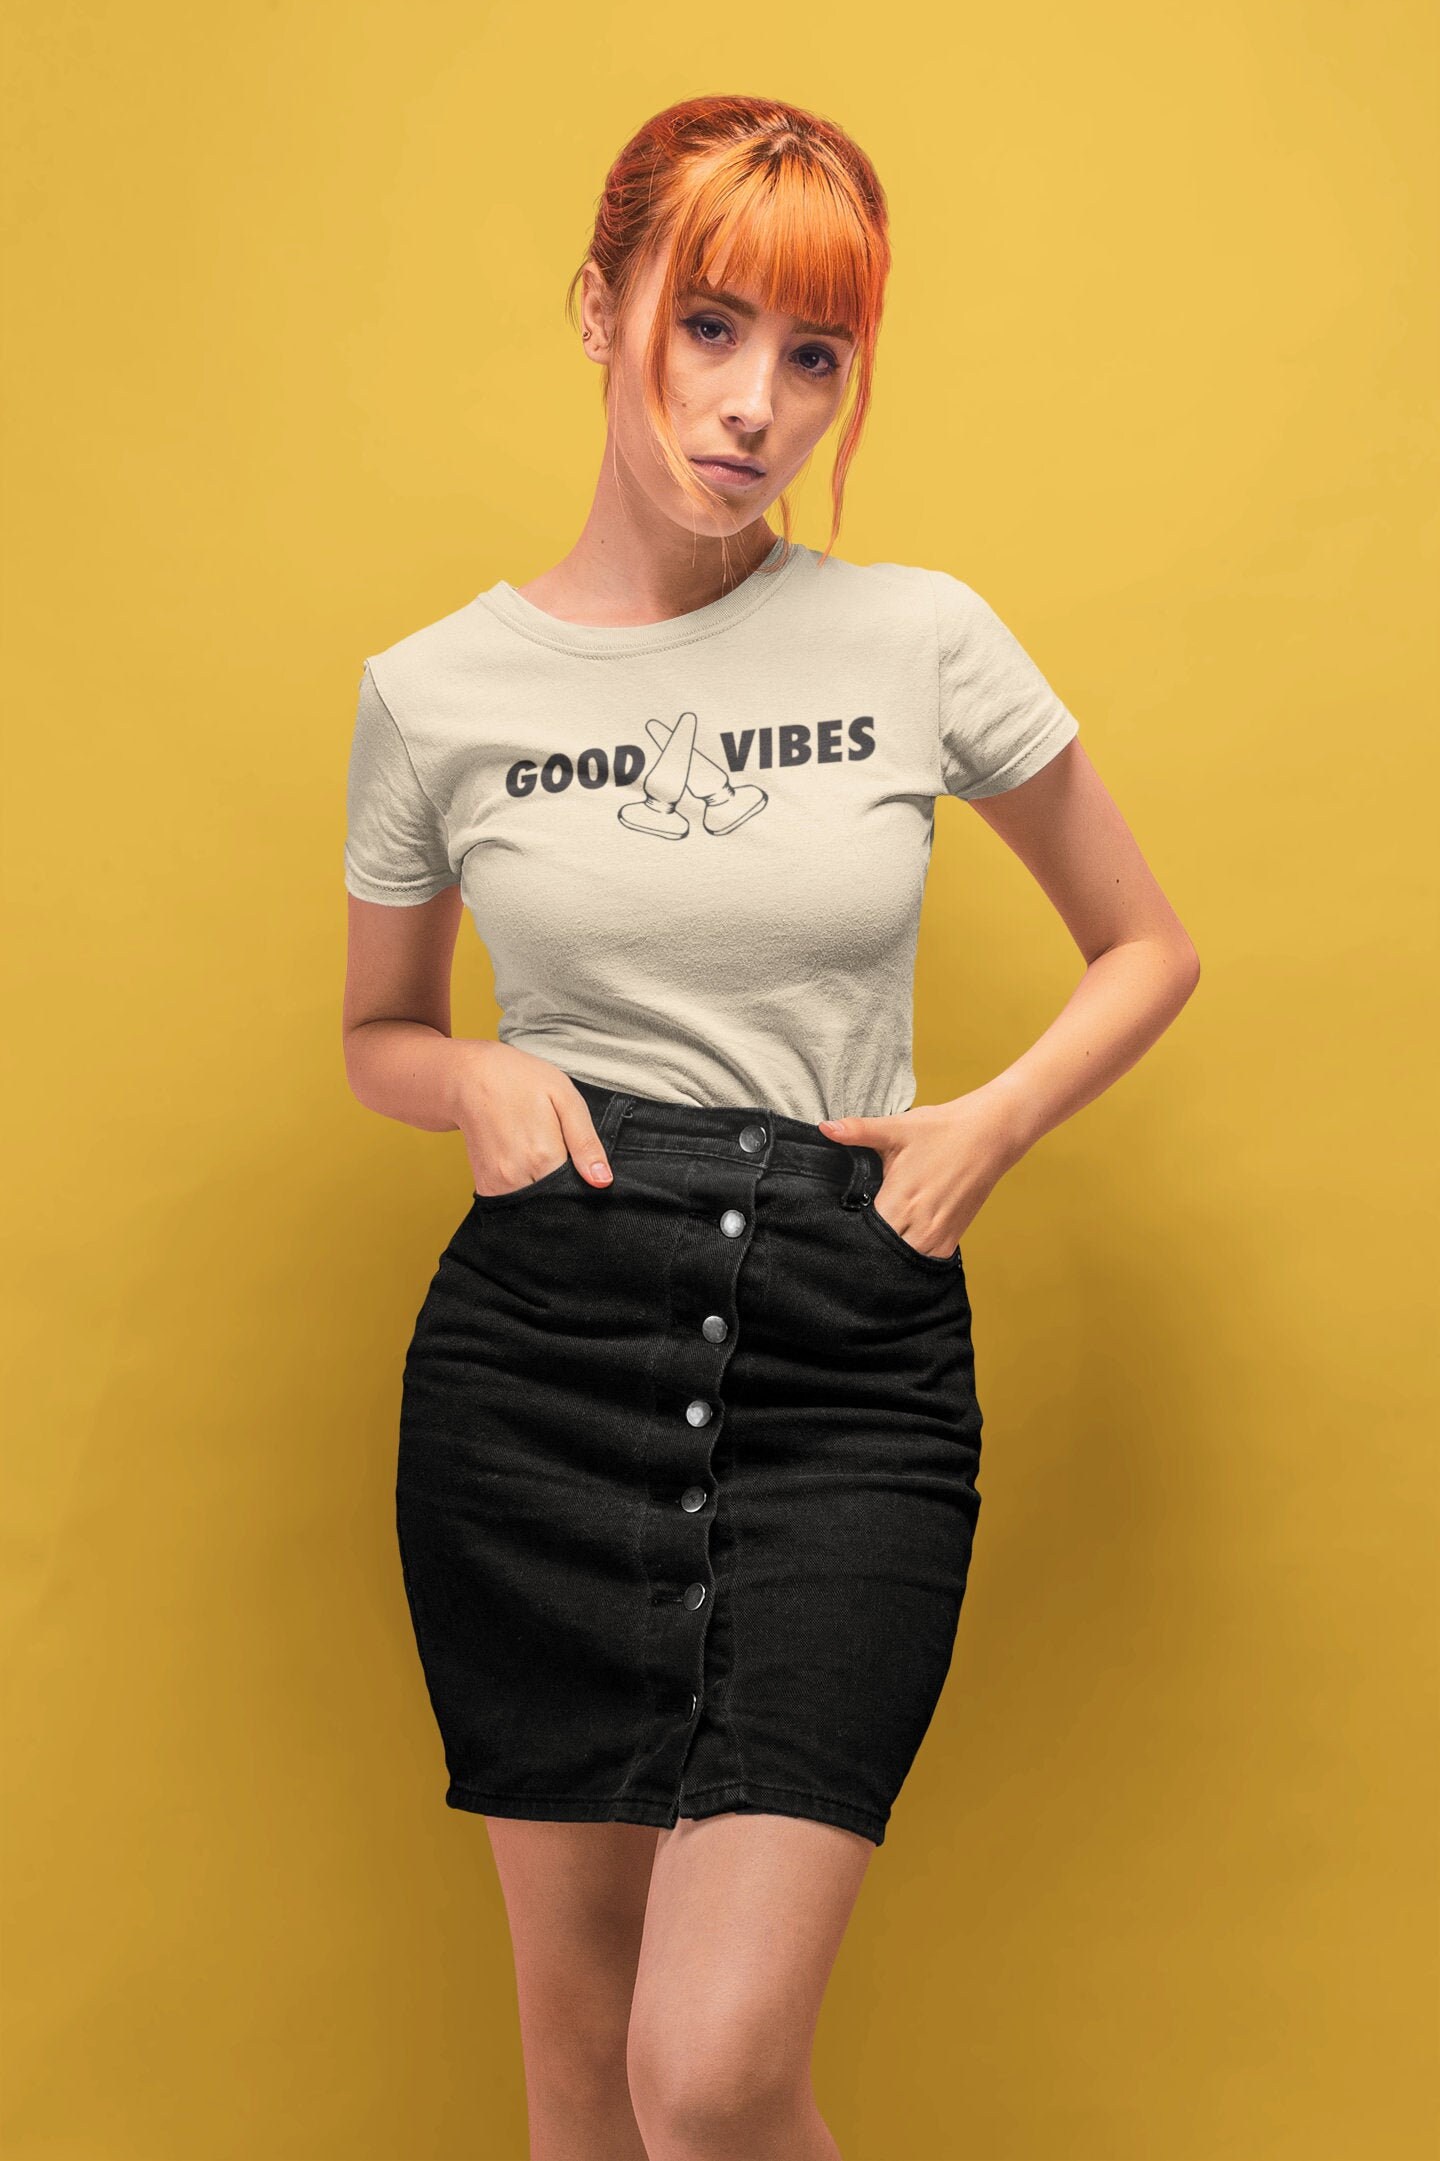 Good Vibes Tshirt Dildo Shirt 90s Shirt Lesbian Tshirt picture photo